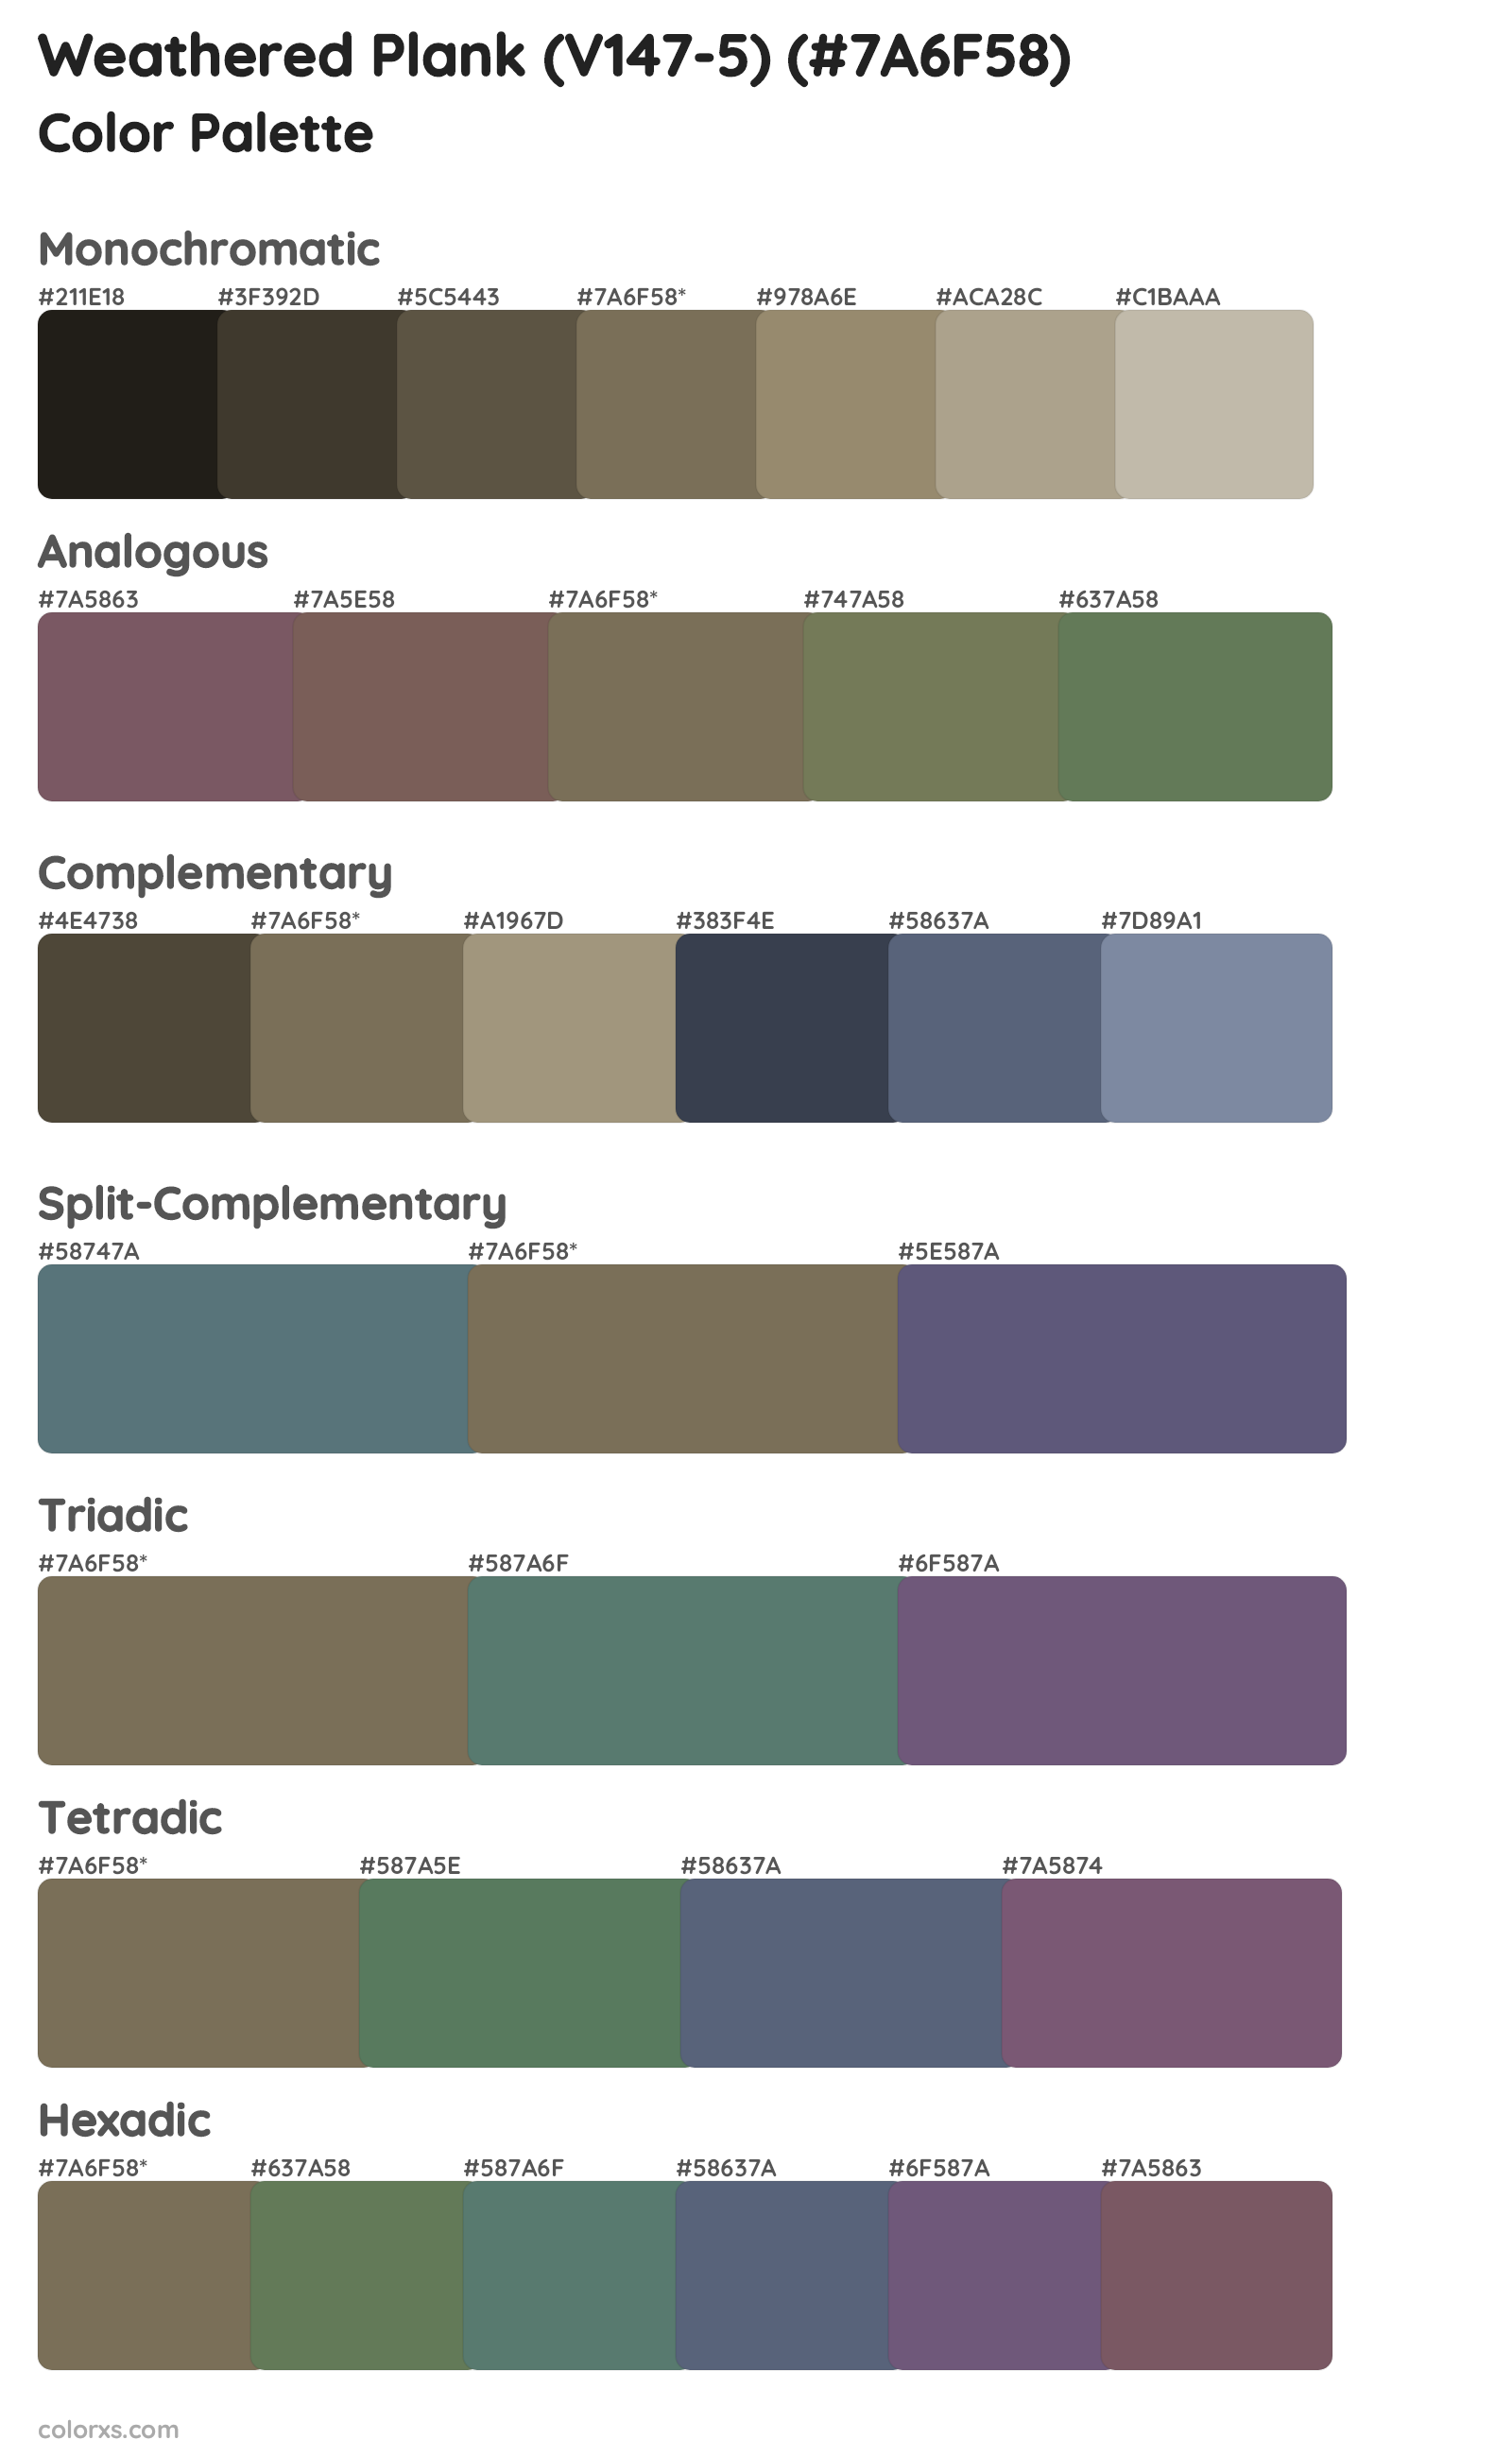 Weathered Plank (V147-5) Color Scheme Palettes